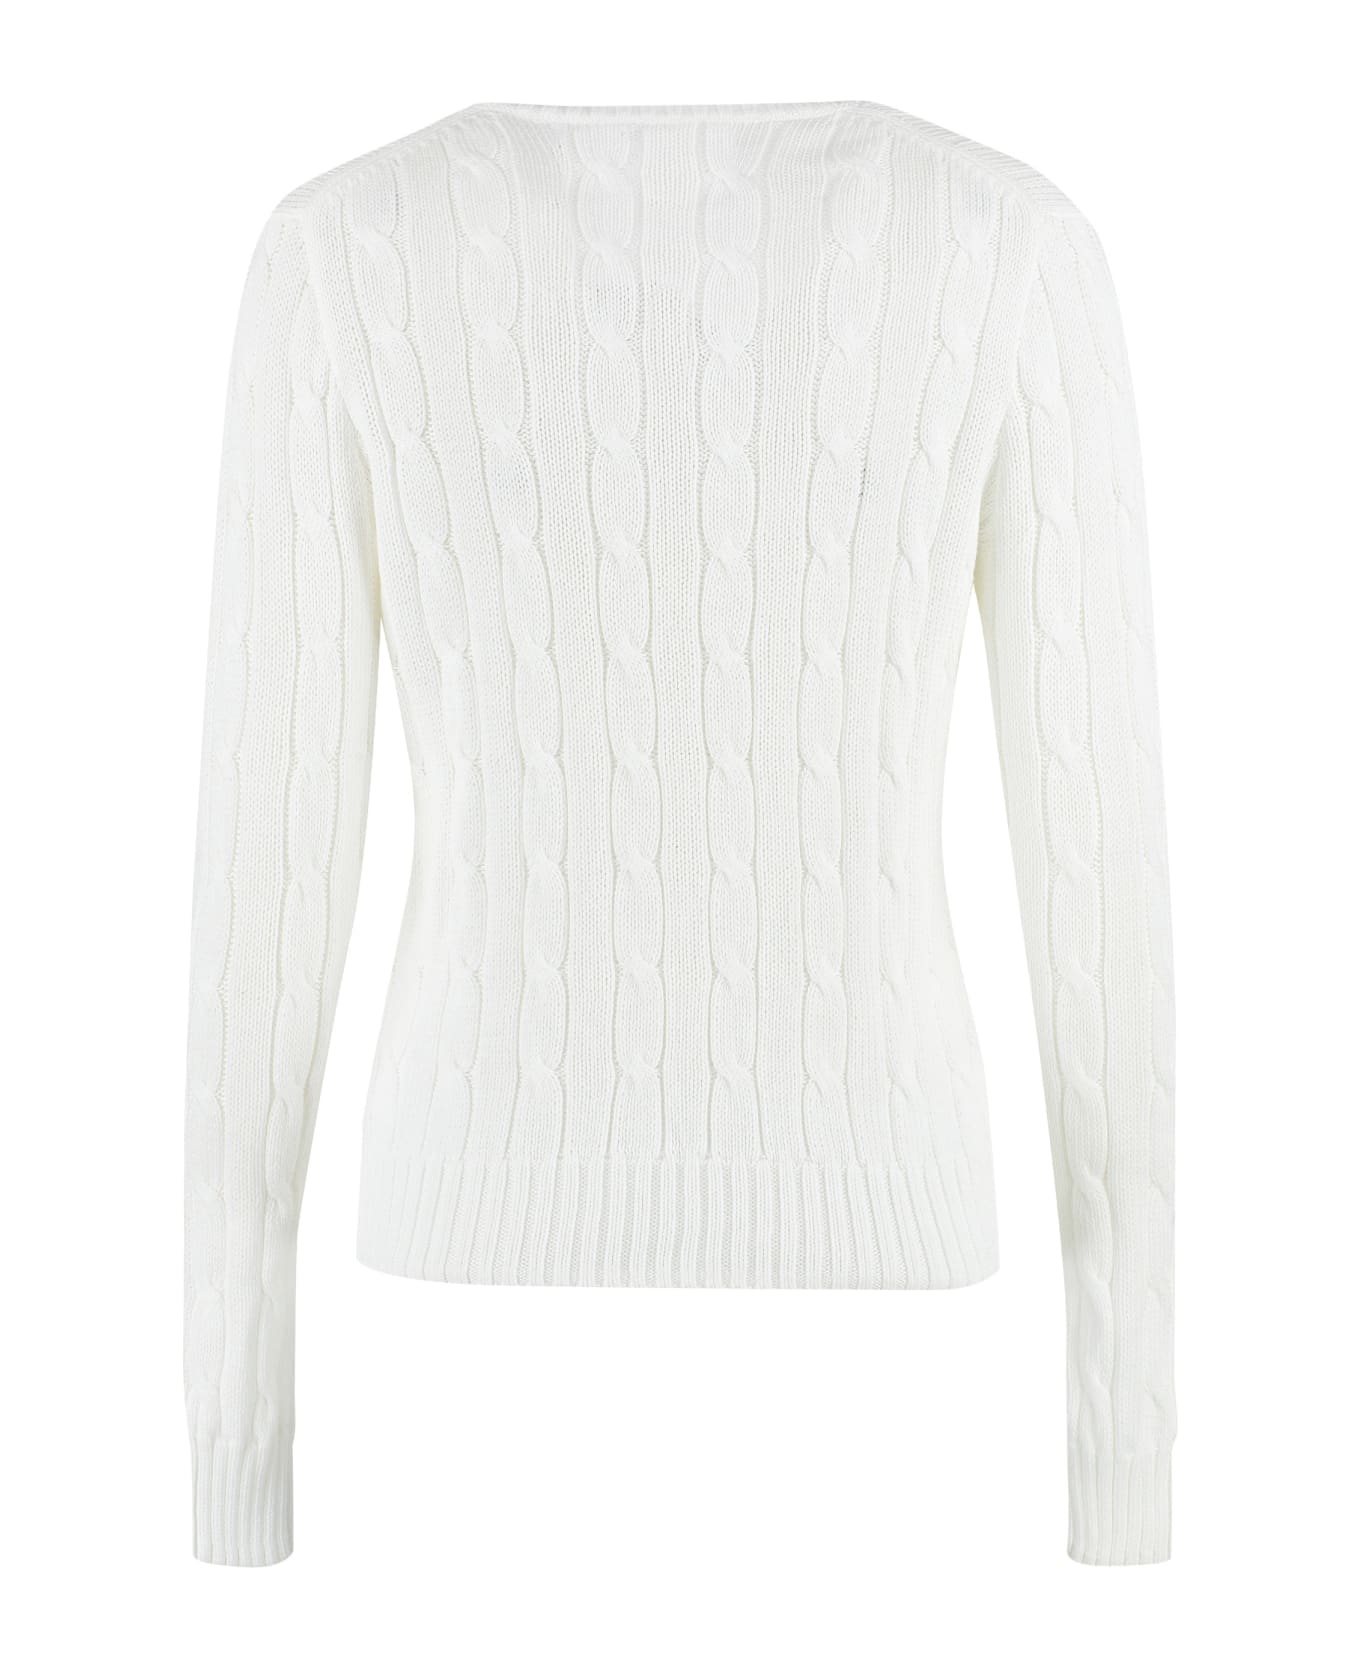 Ralph Lauren Cable Knit Sweater - White ニットウェア